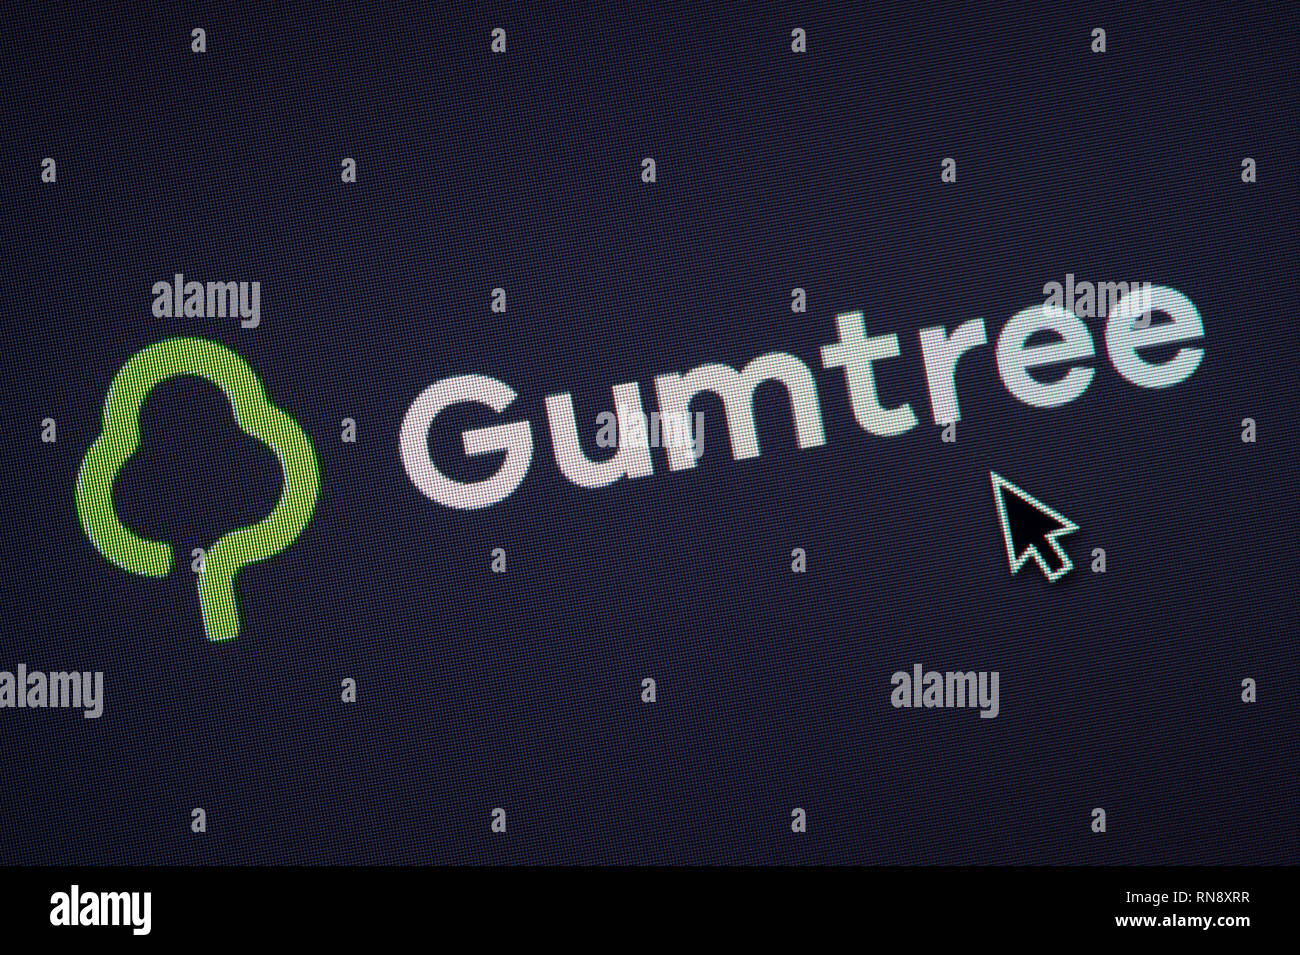 Das Logo von Gumtree ist auf einem Bildschirm gesehen zusammen mit einer Maus Cursor (nur redaktionelle Nutzung) Stockfoto